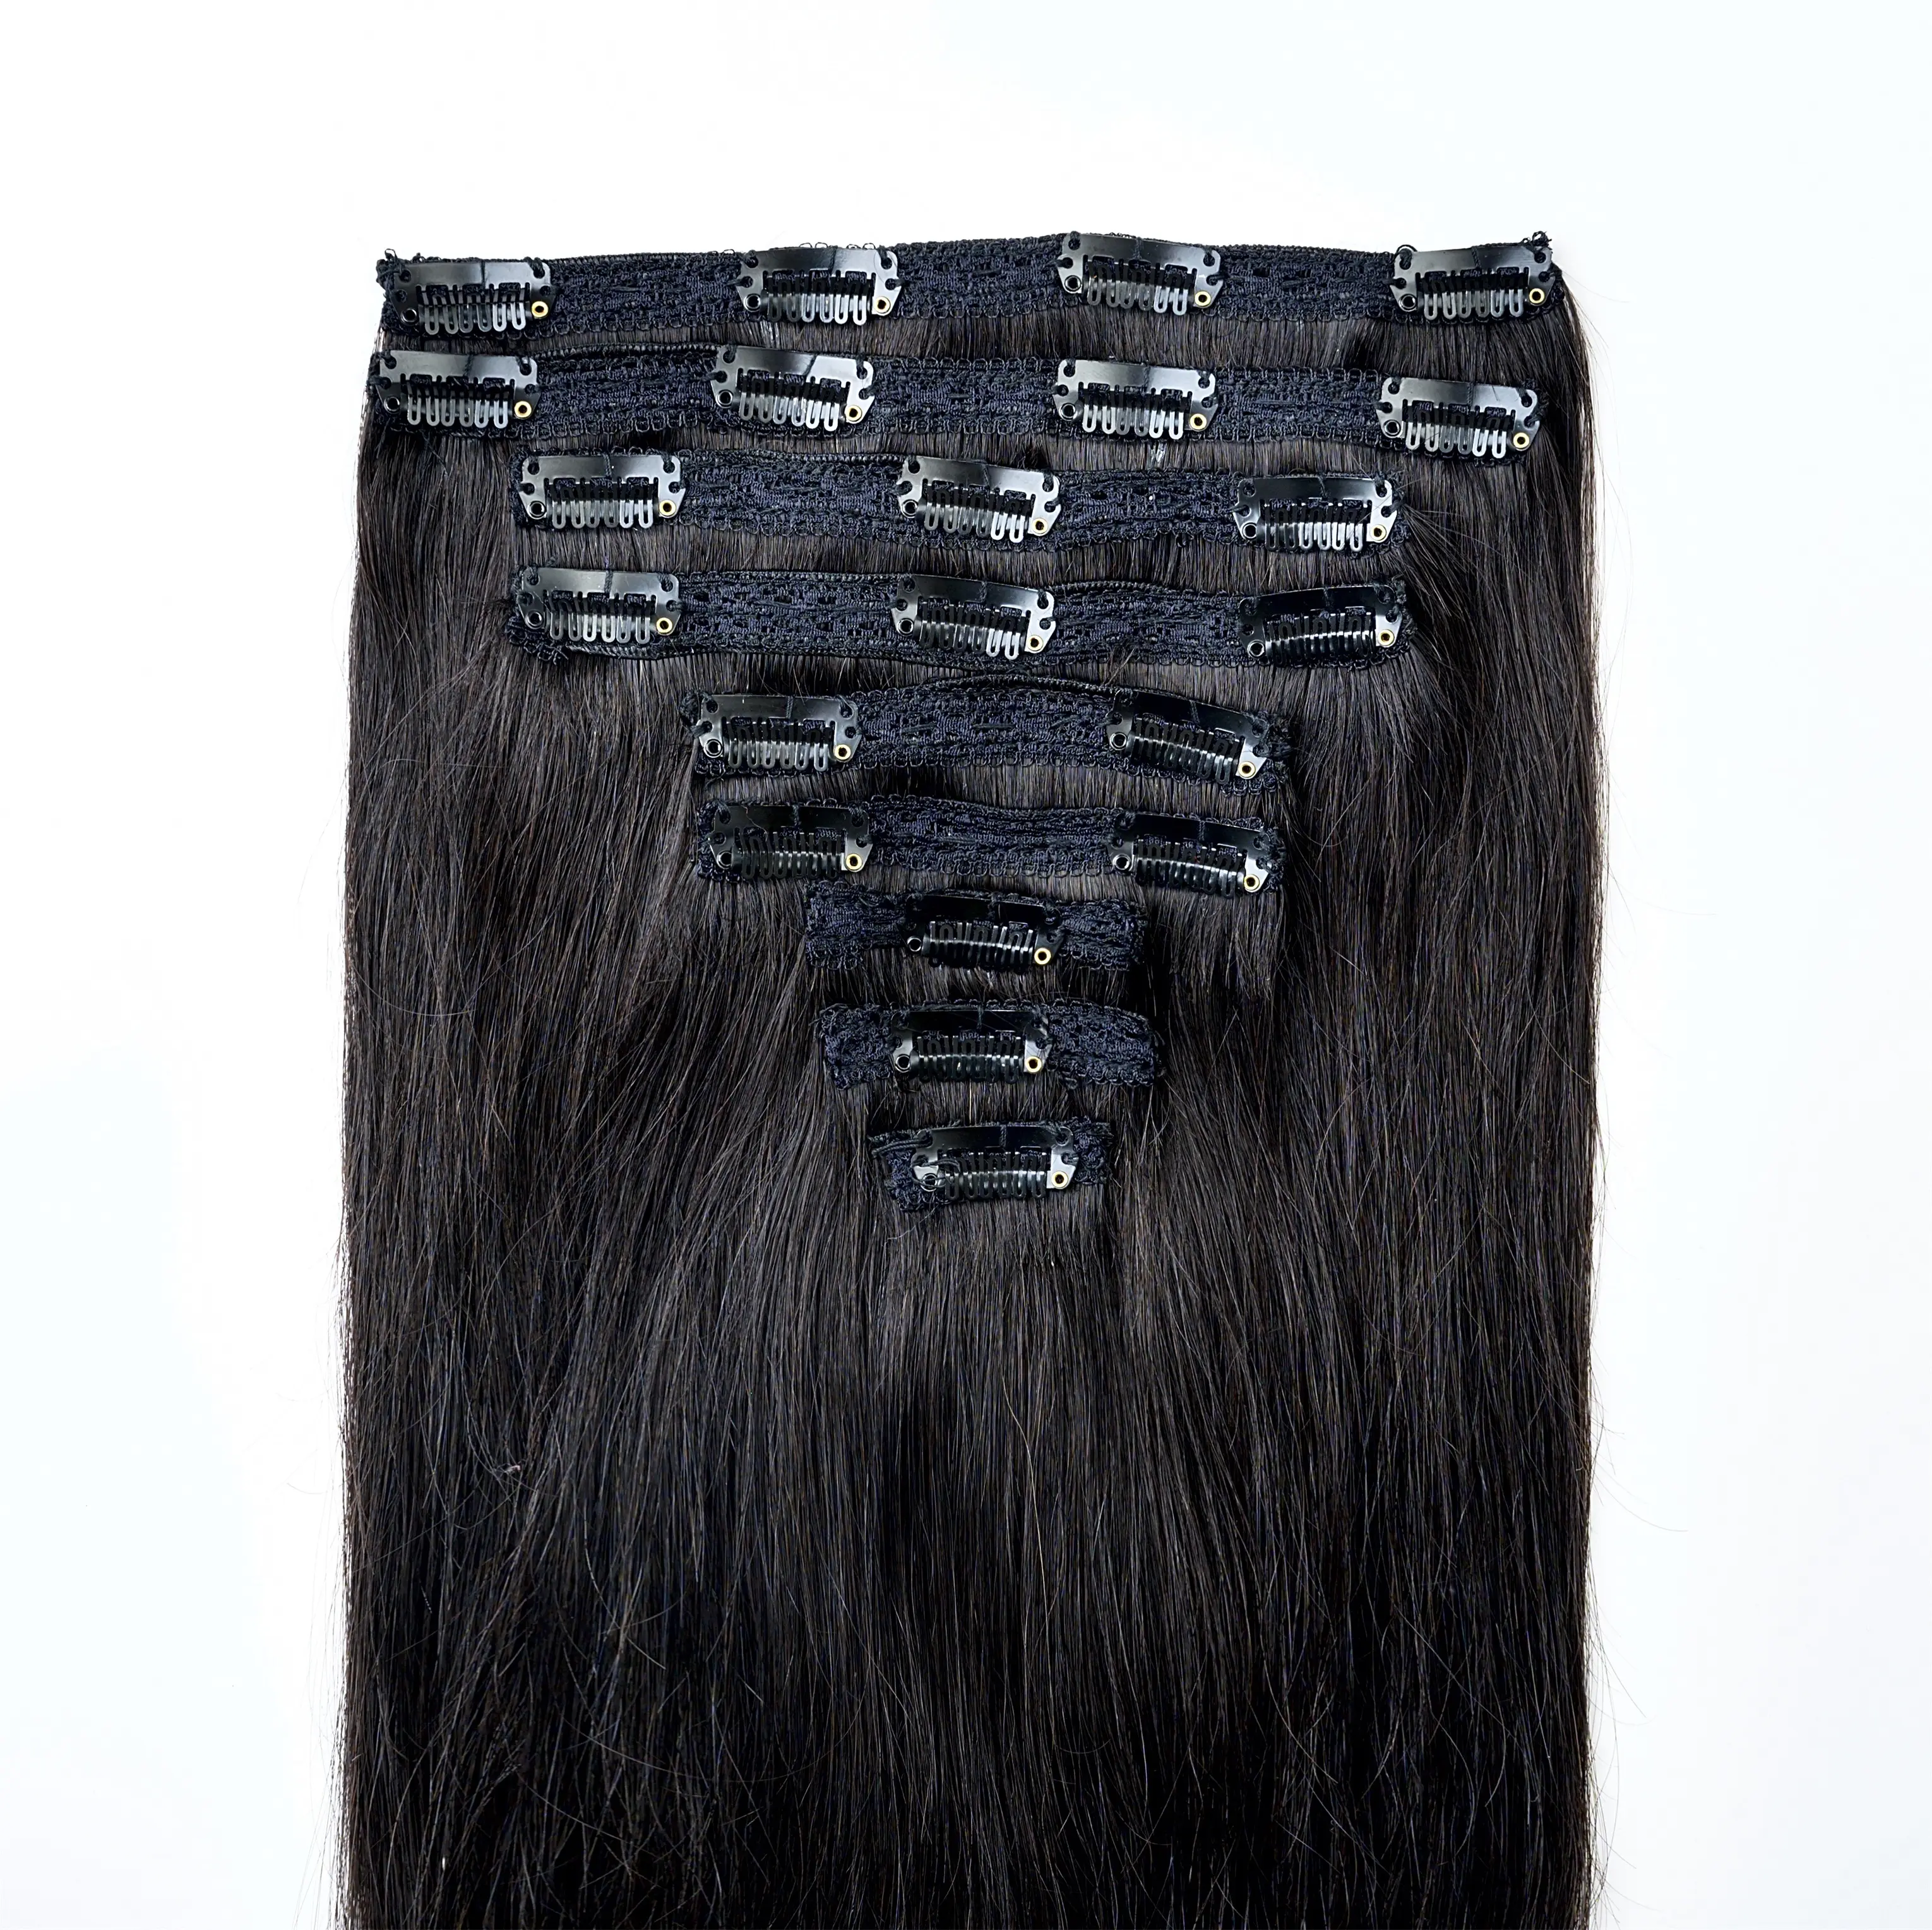 Capelli superiori di alta qualità stellati ciocche 100% capelli umani cambogiani 18 pollici 9 pezzi colore scuro Clip in extension